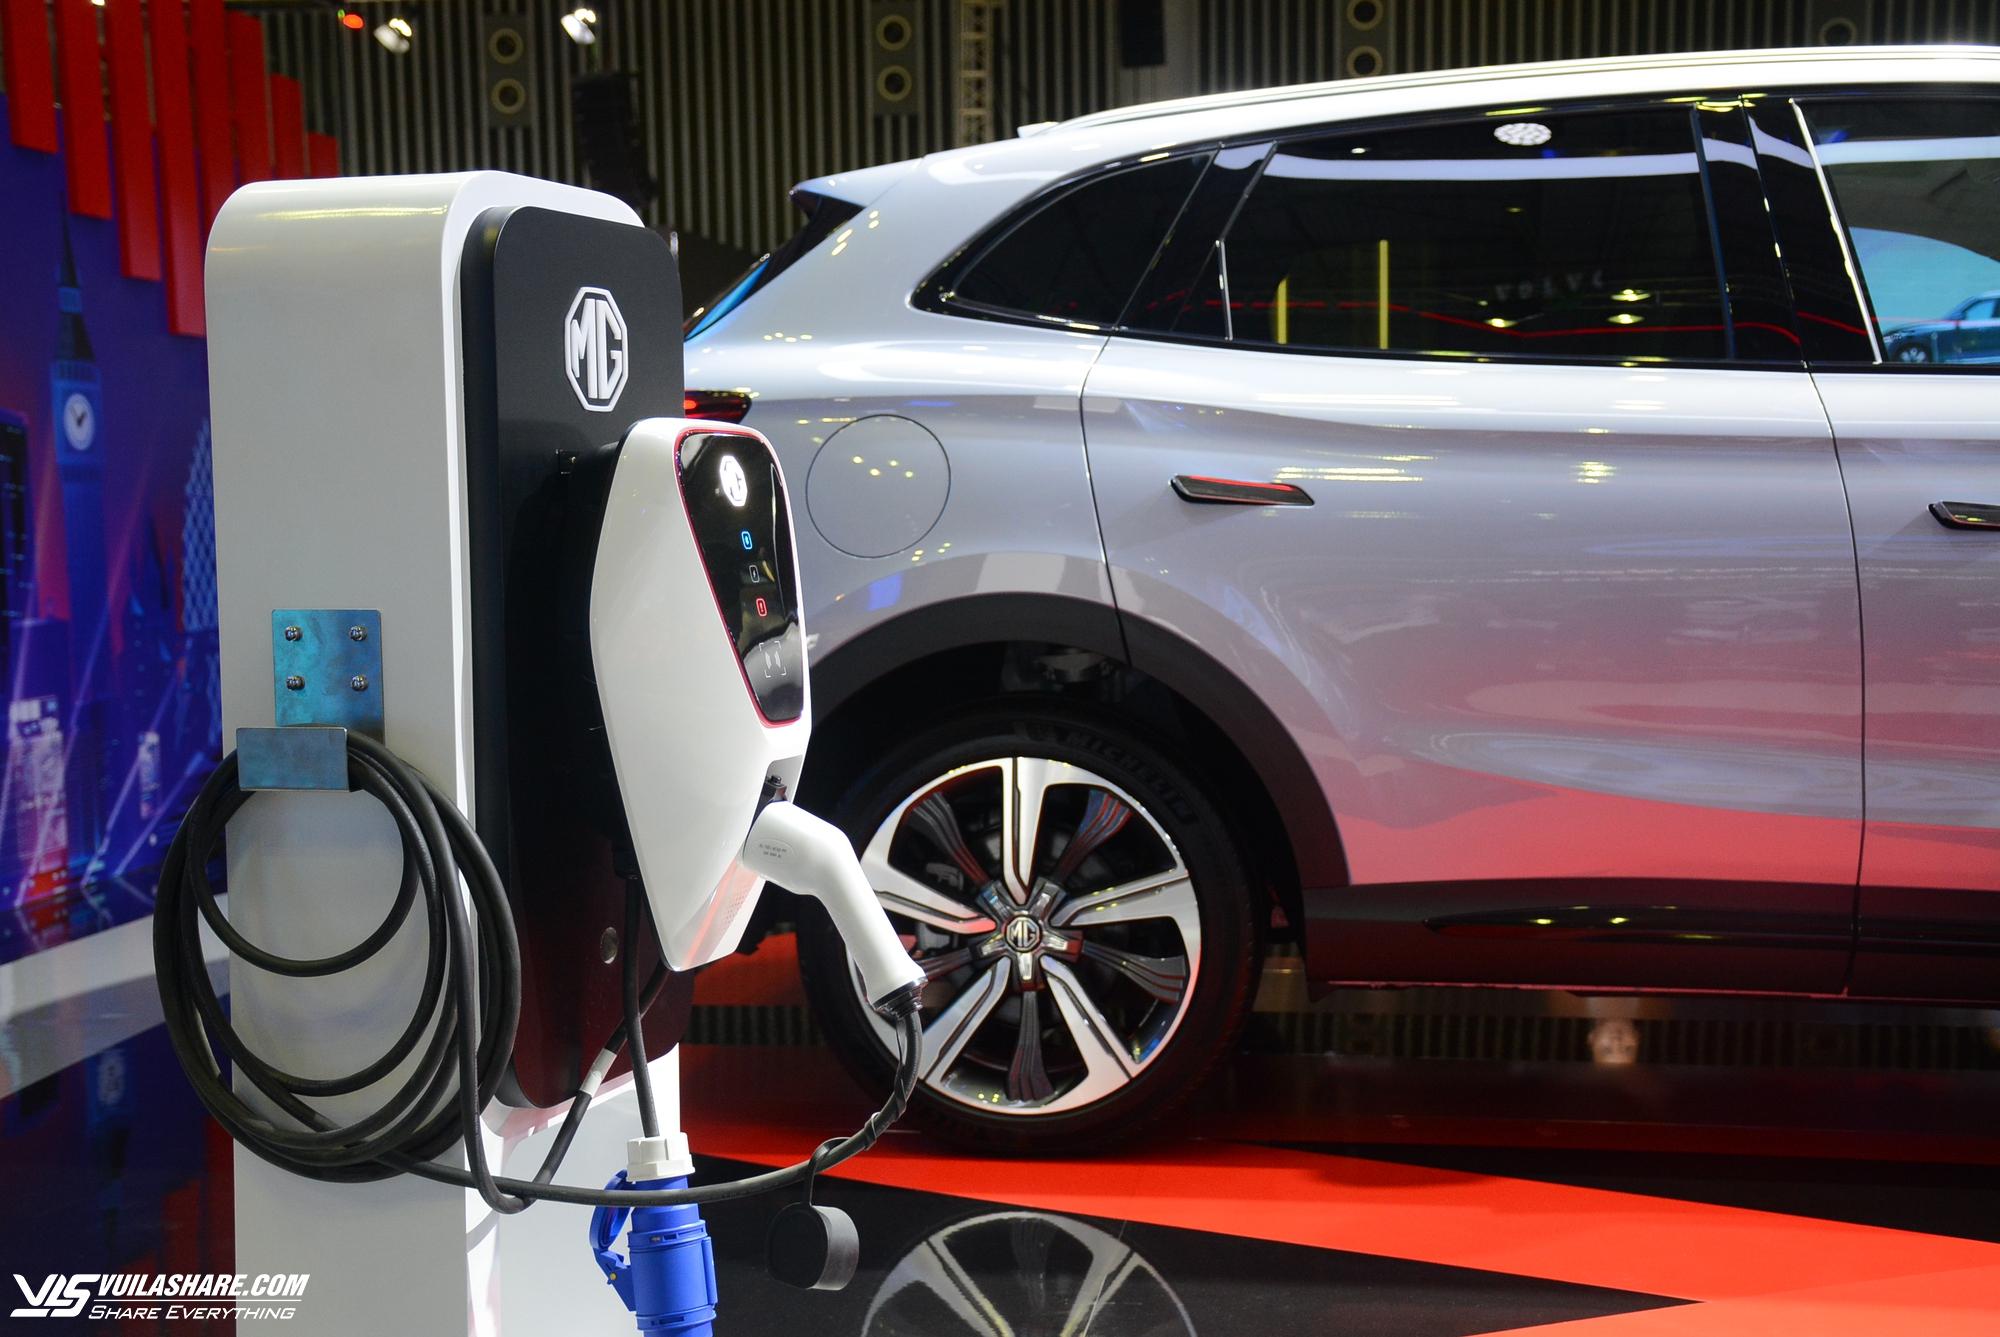 Tỷ lệ khách hàng tiềm năng mua ô tô điện ngày càng giảm- Ảnh 1.